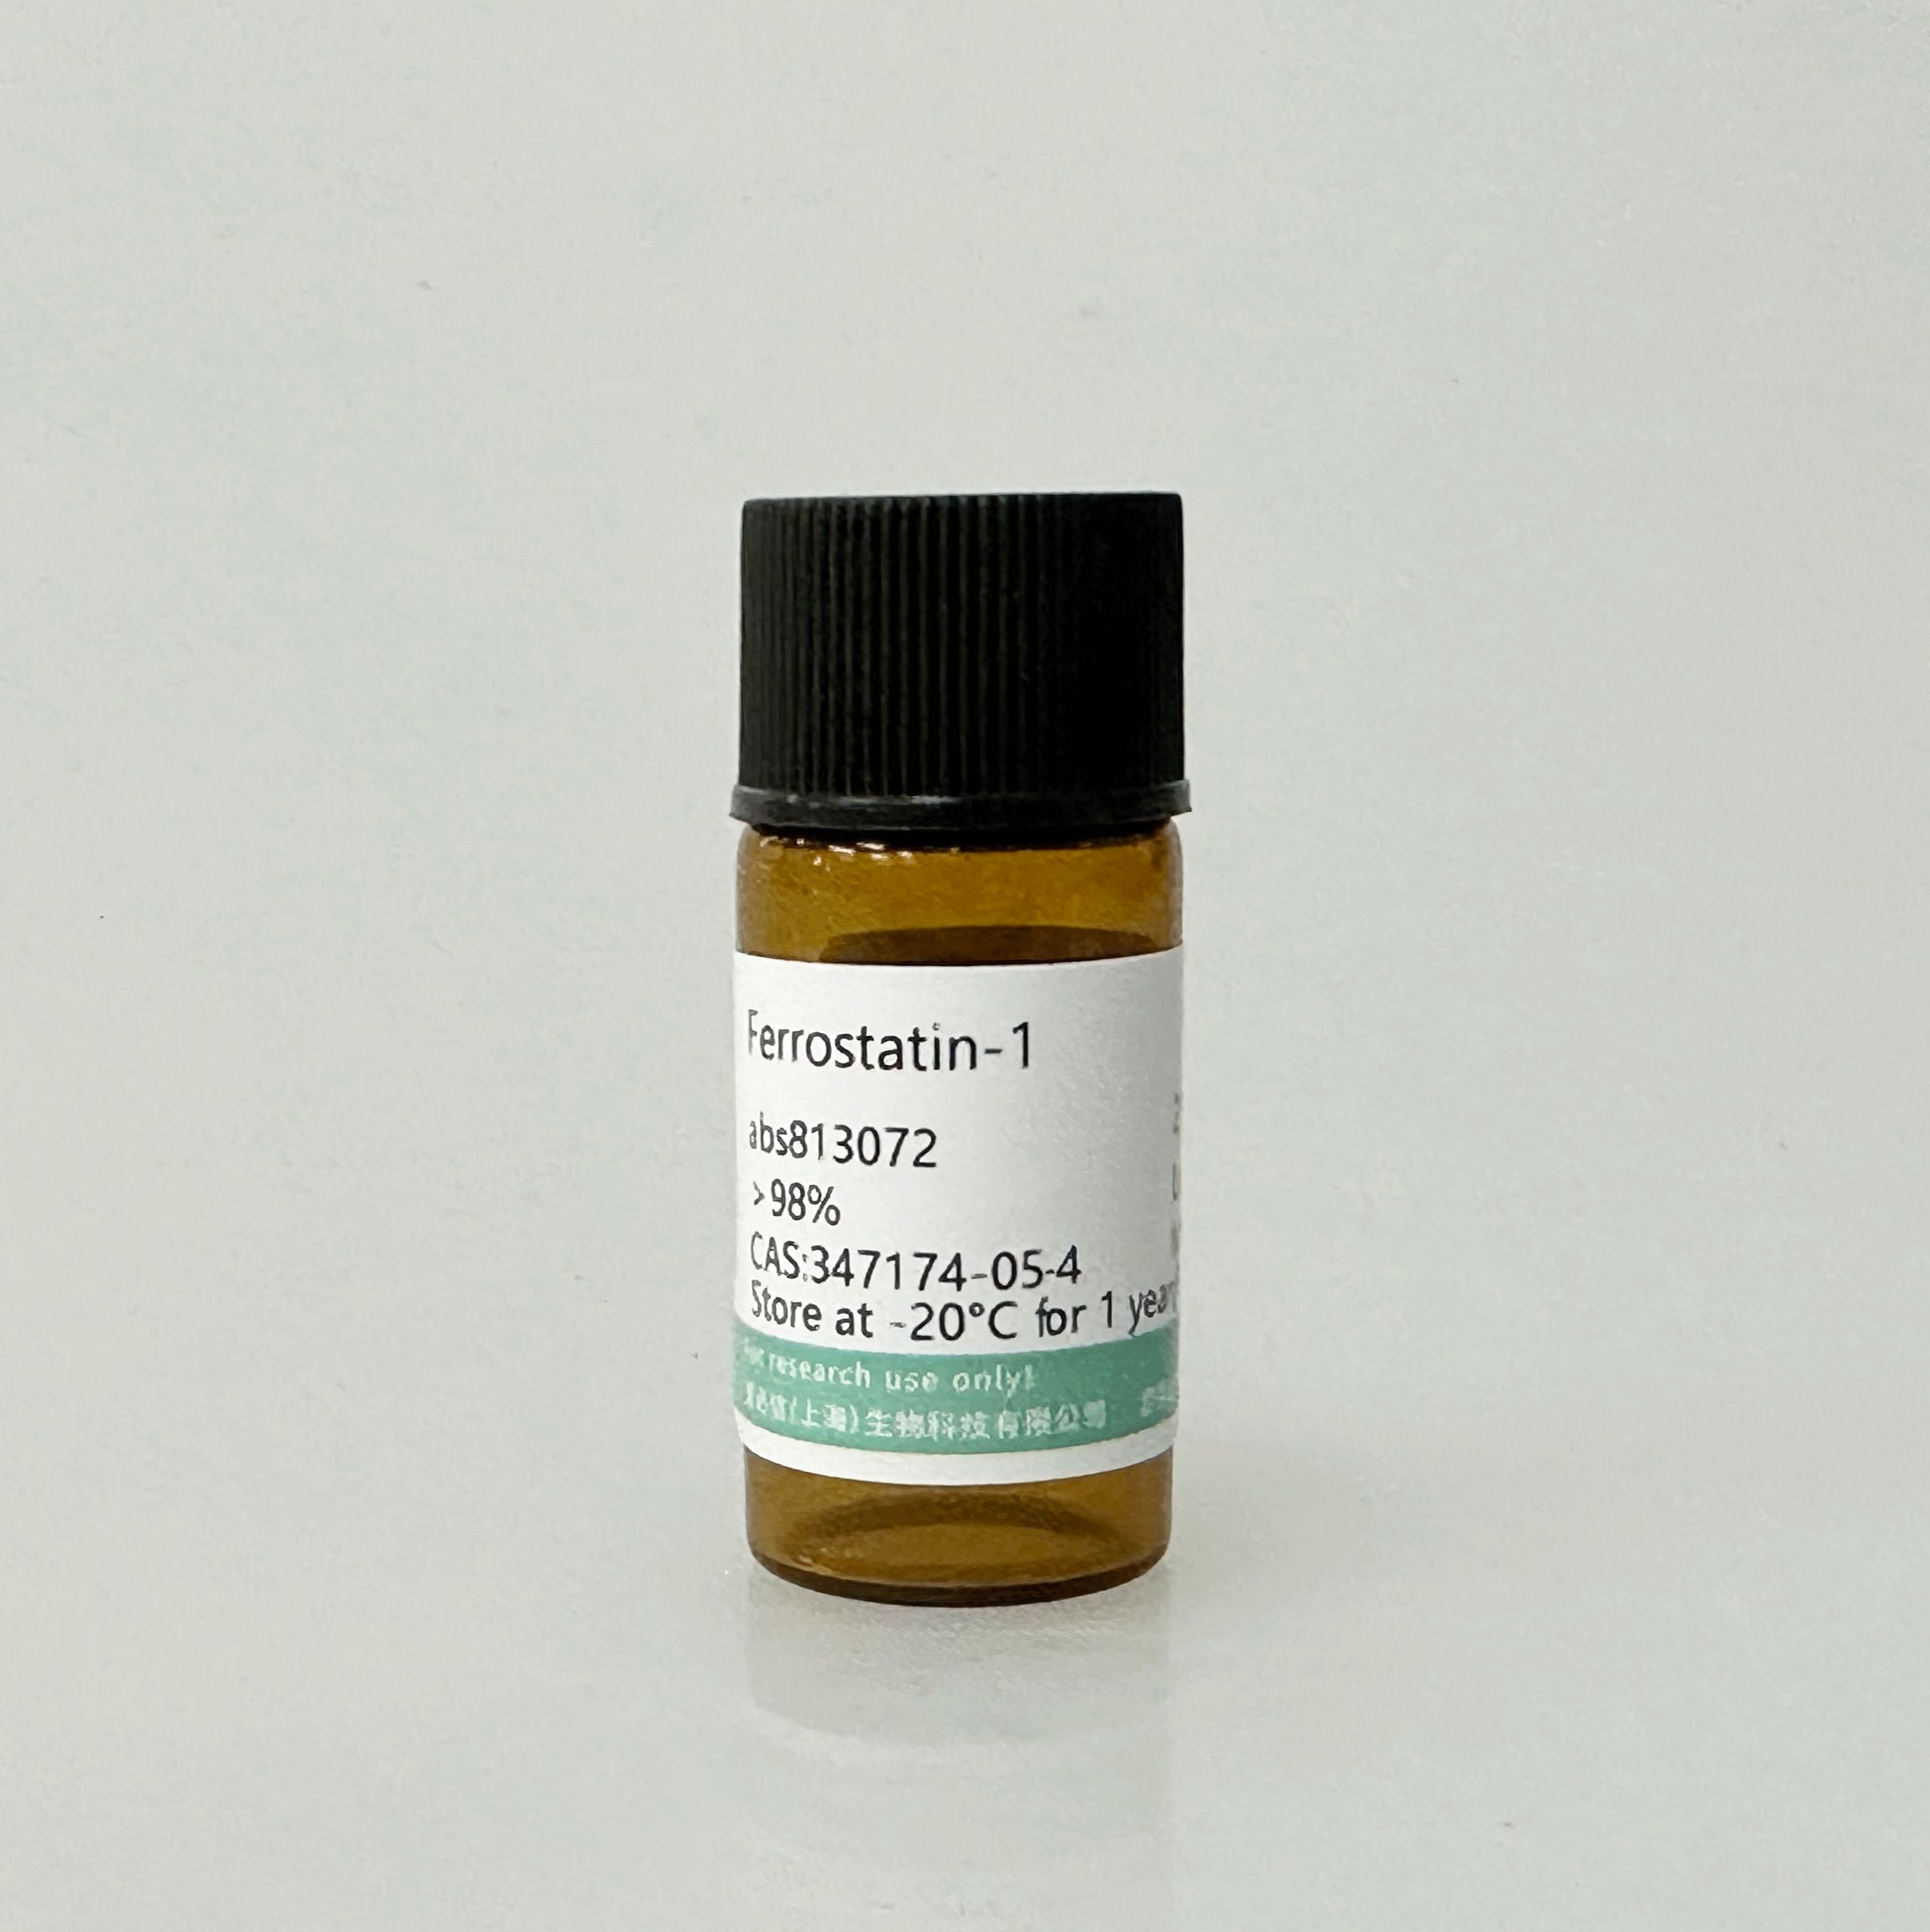 Ferrostatin-1,347174-05-4